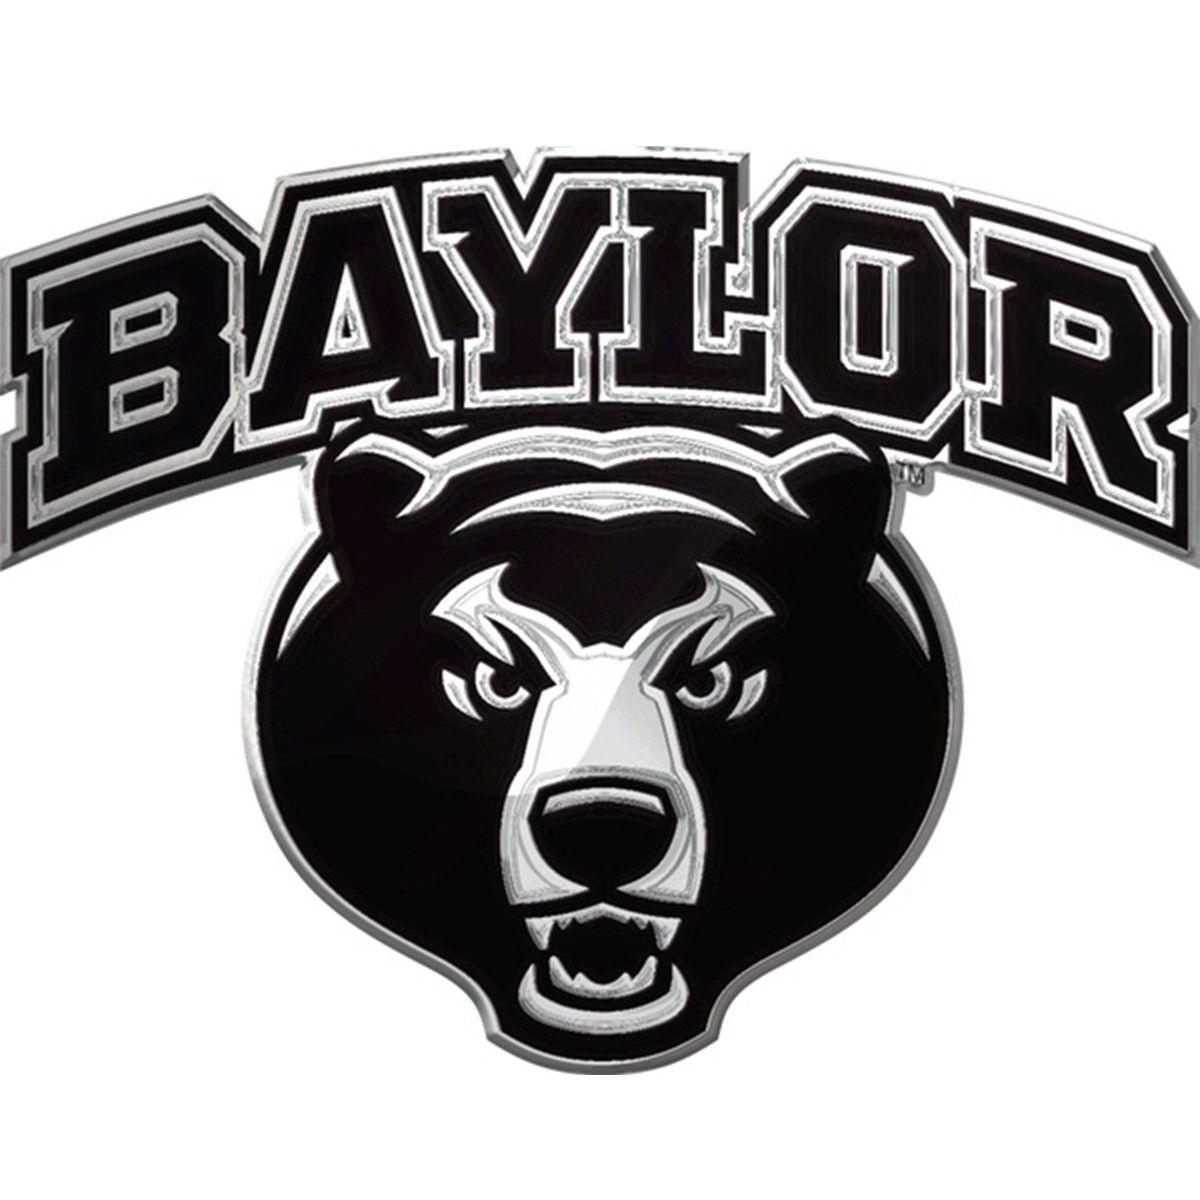 Automotive Team Logo - Baylor Bears Word Mark NCAA College Team Logo Auto Car